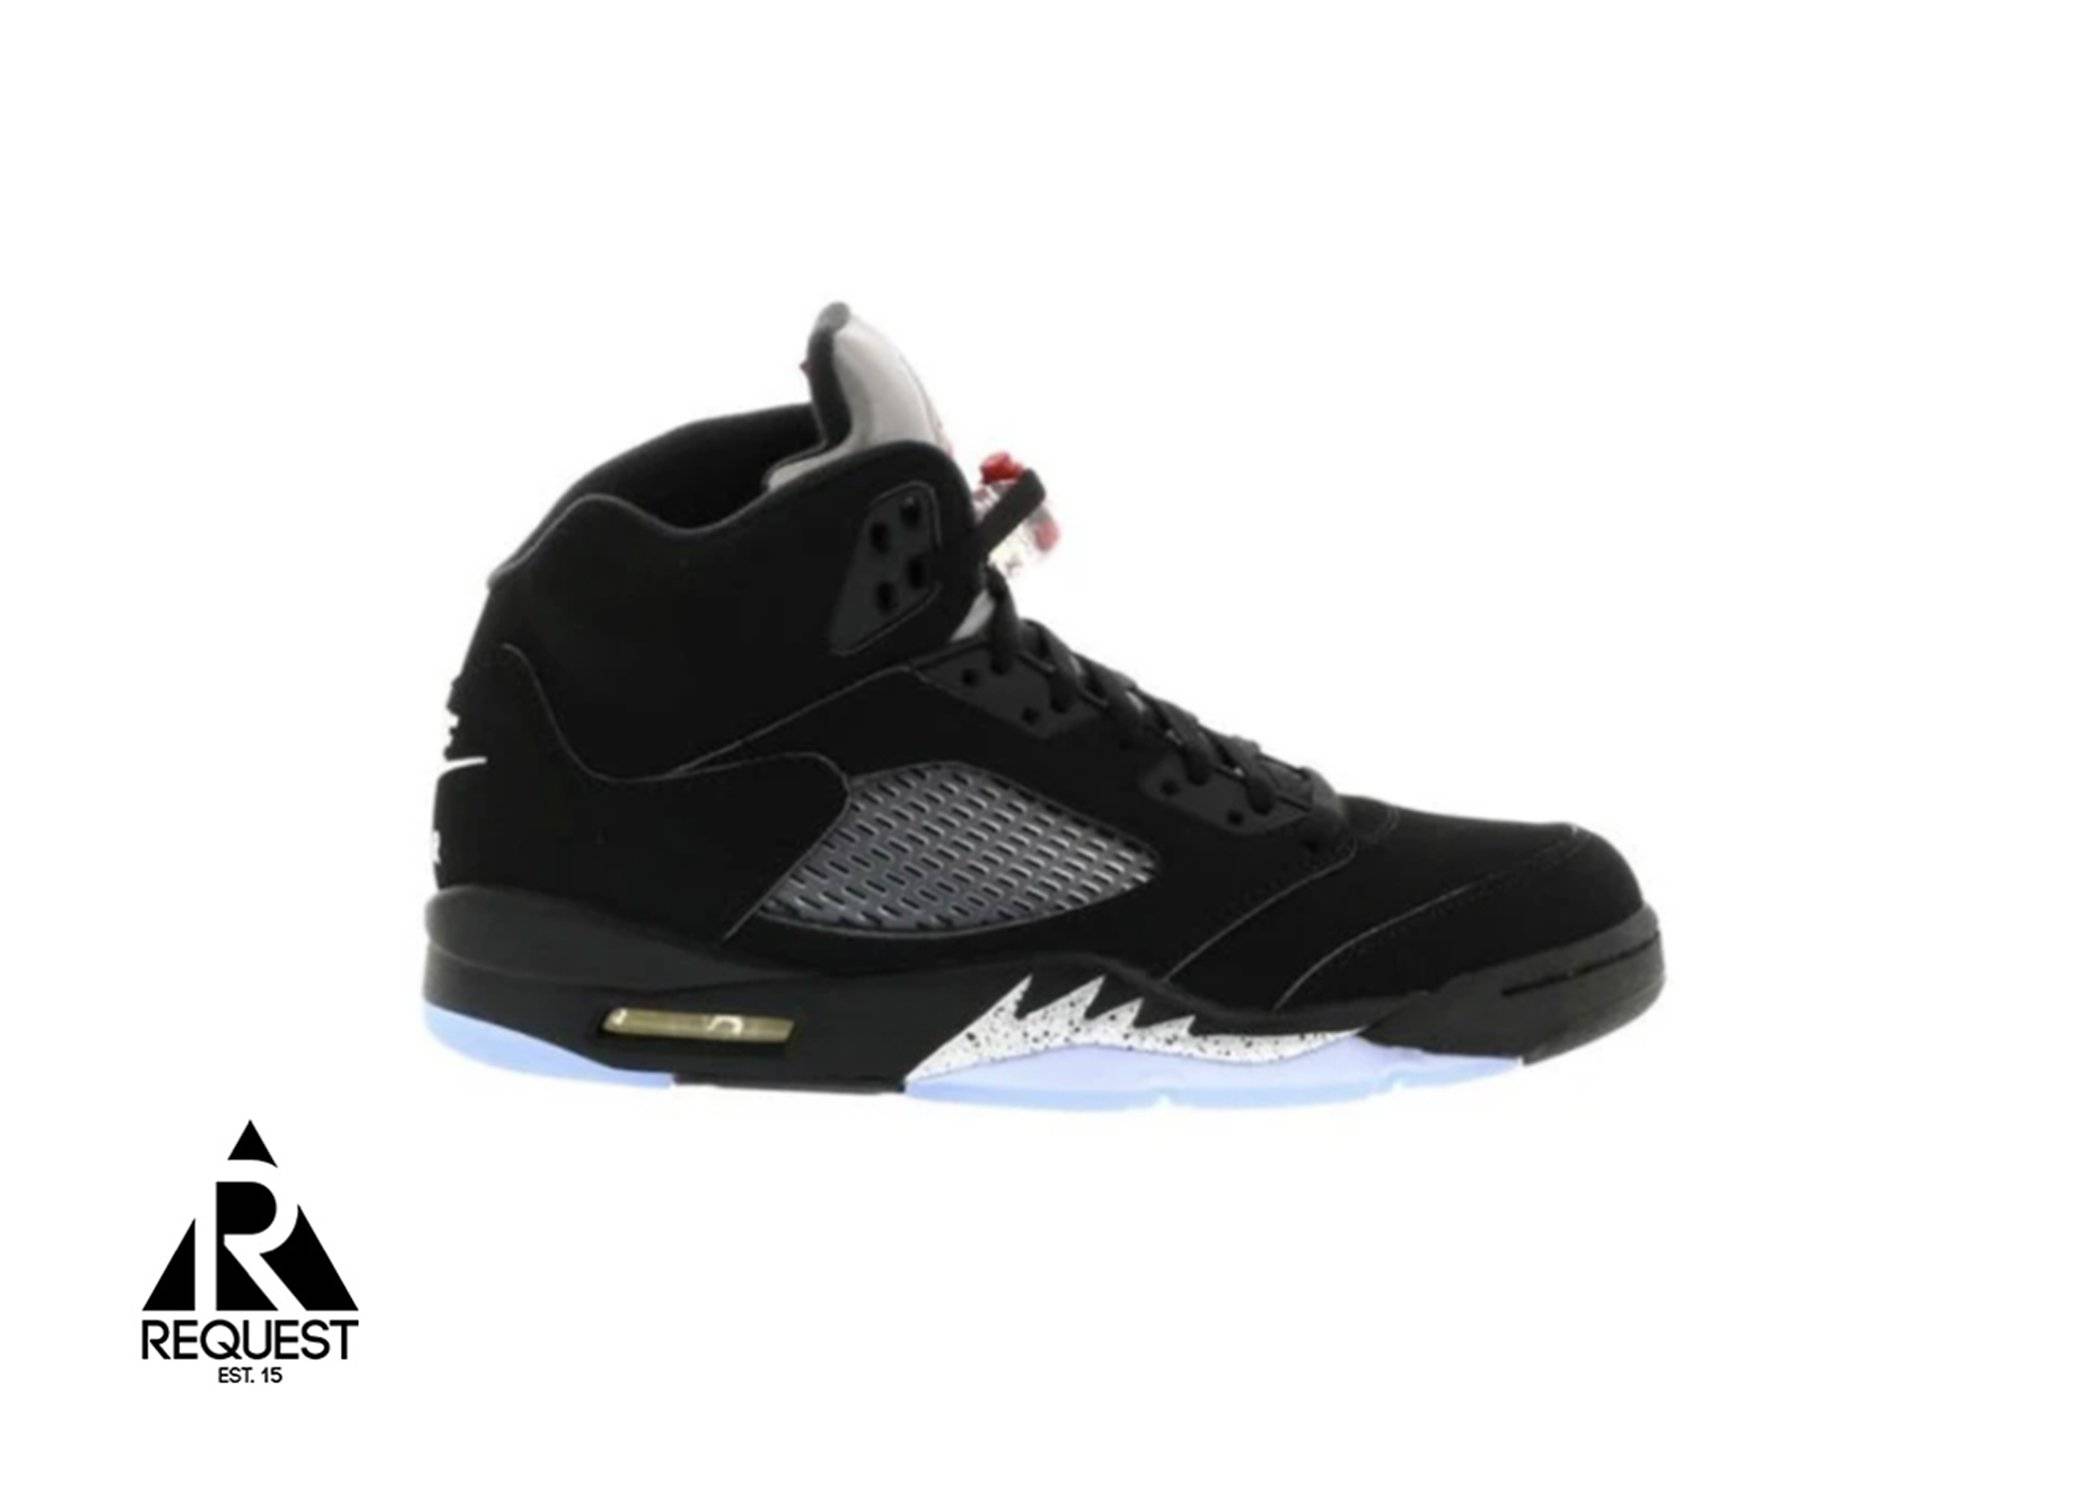 Air Jordan 5 Retro “Black Metallic”